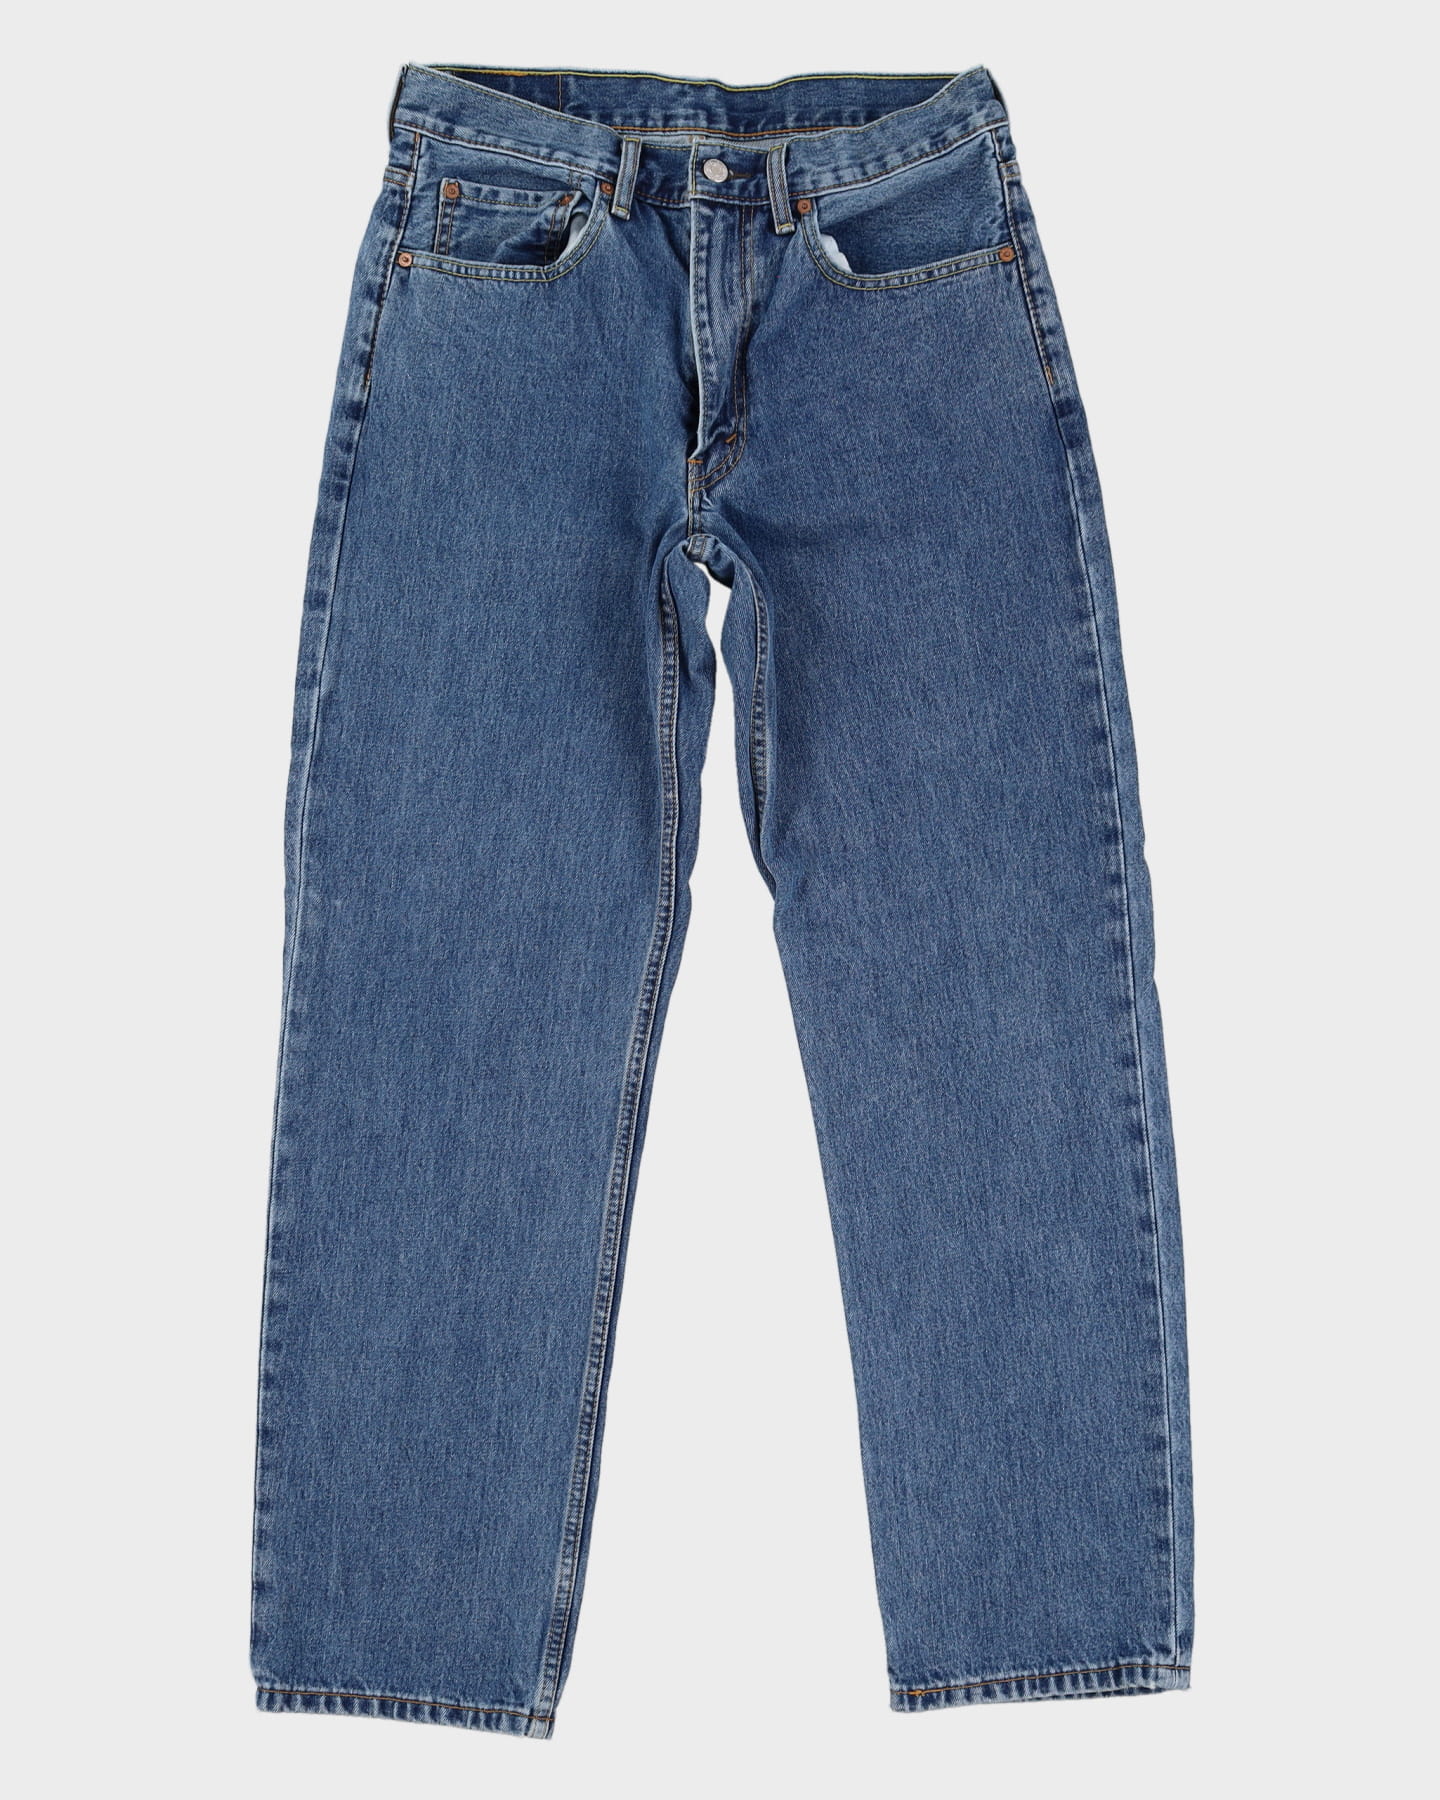 Levi's 505 Blue Jeans - W33 L32